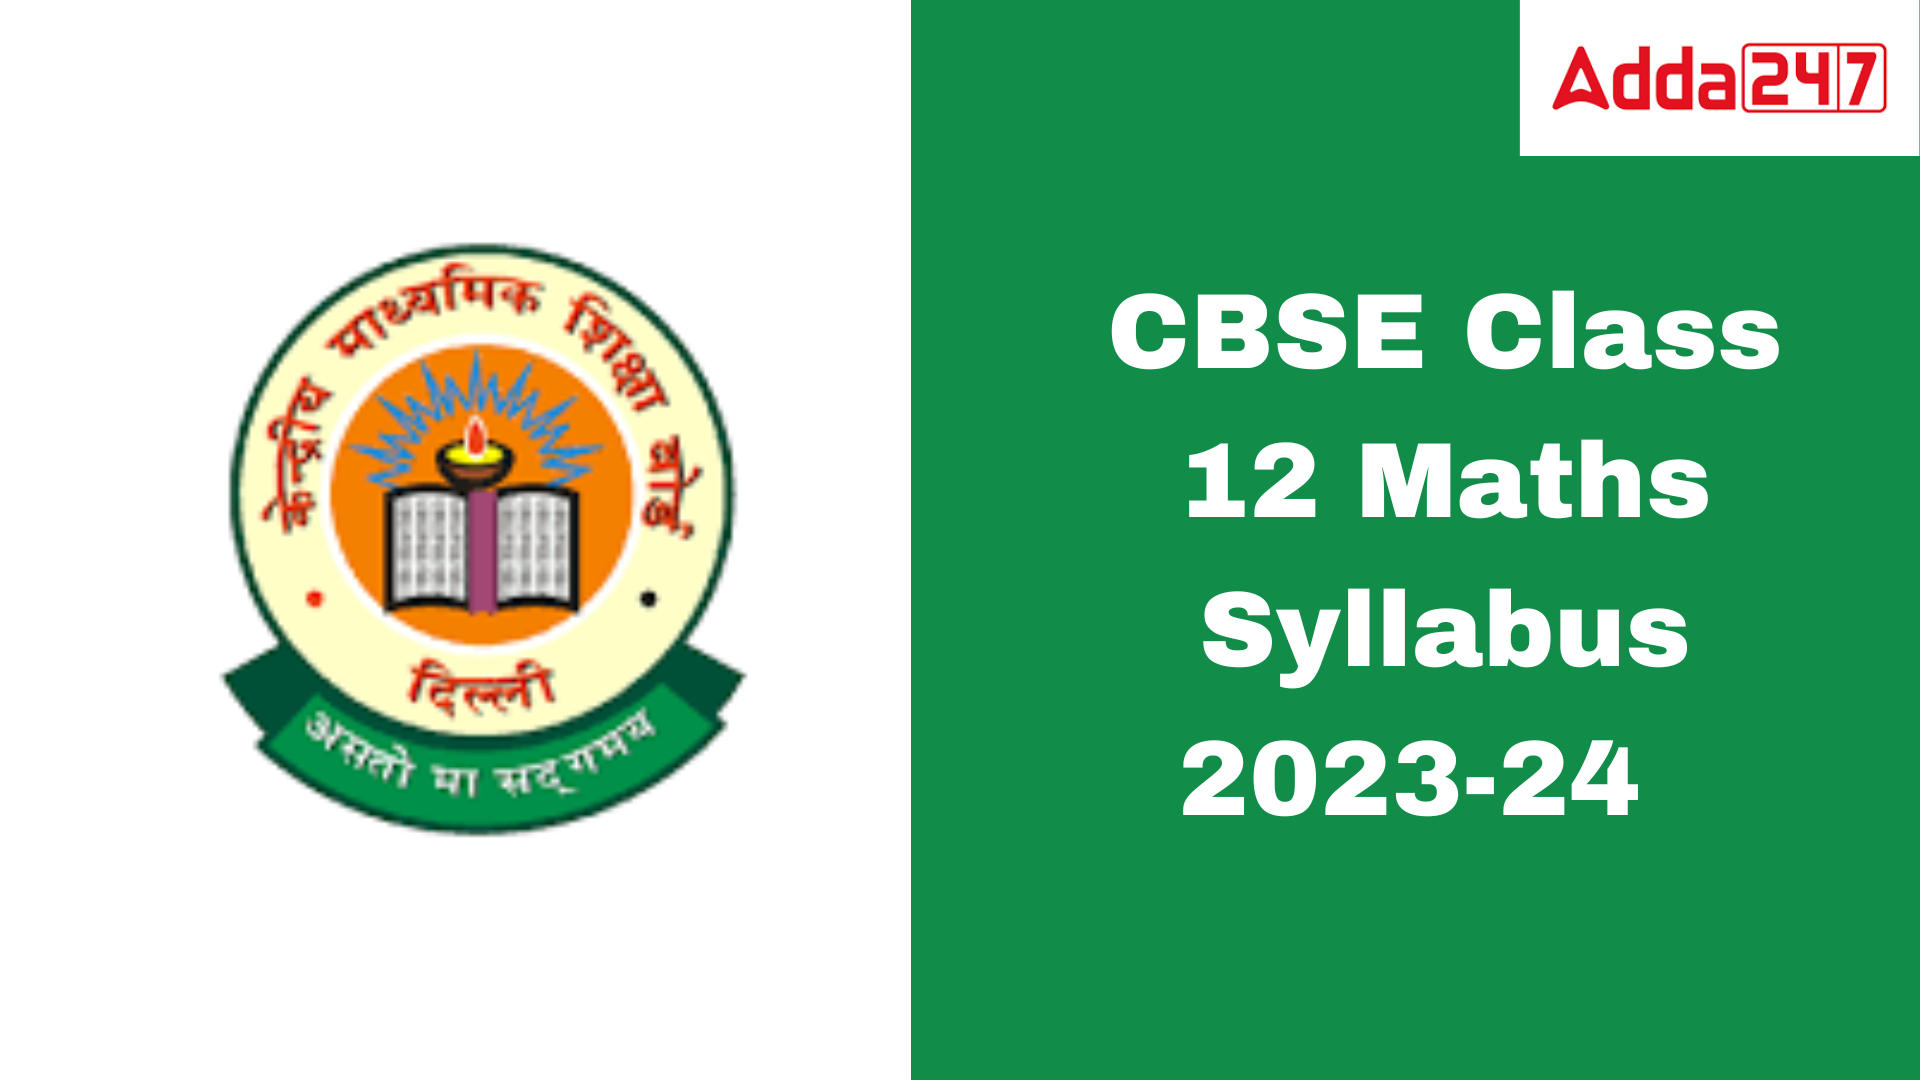 CBSE Class 12 Maths Syllabus 2023-24